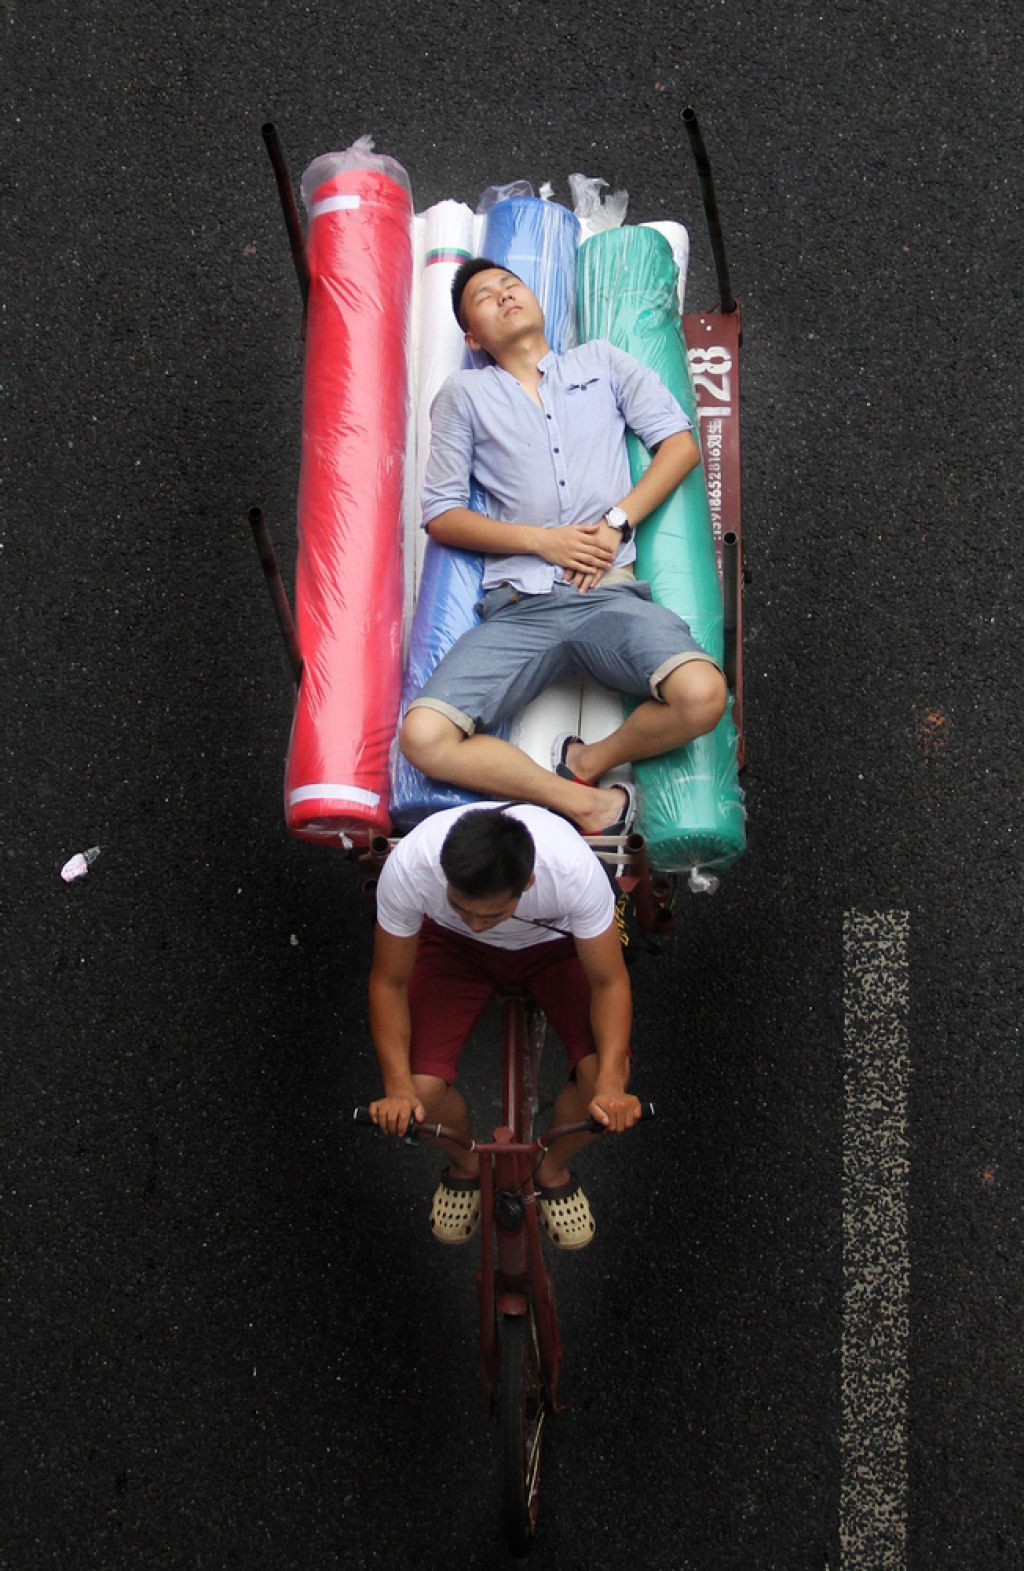 Fotos aéreas capturam a vida sobre o triciclos em Cantão, na China 09